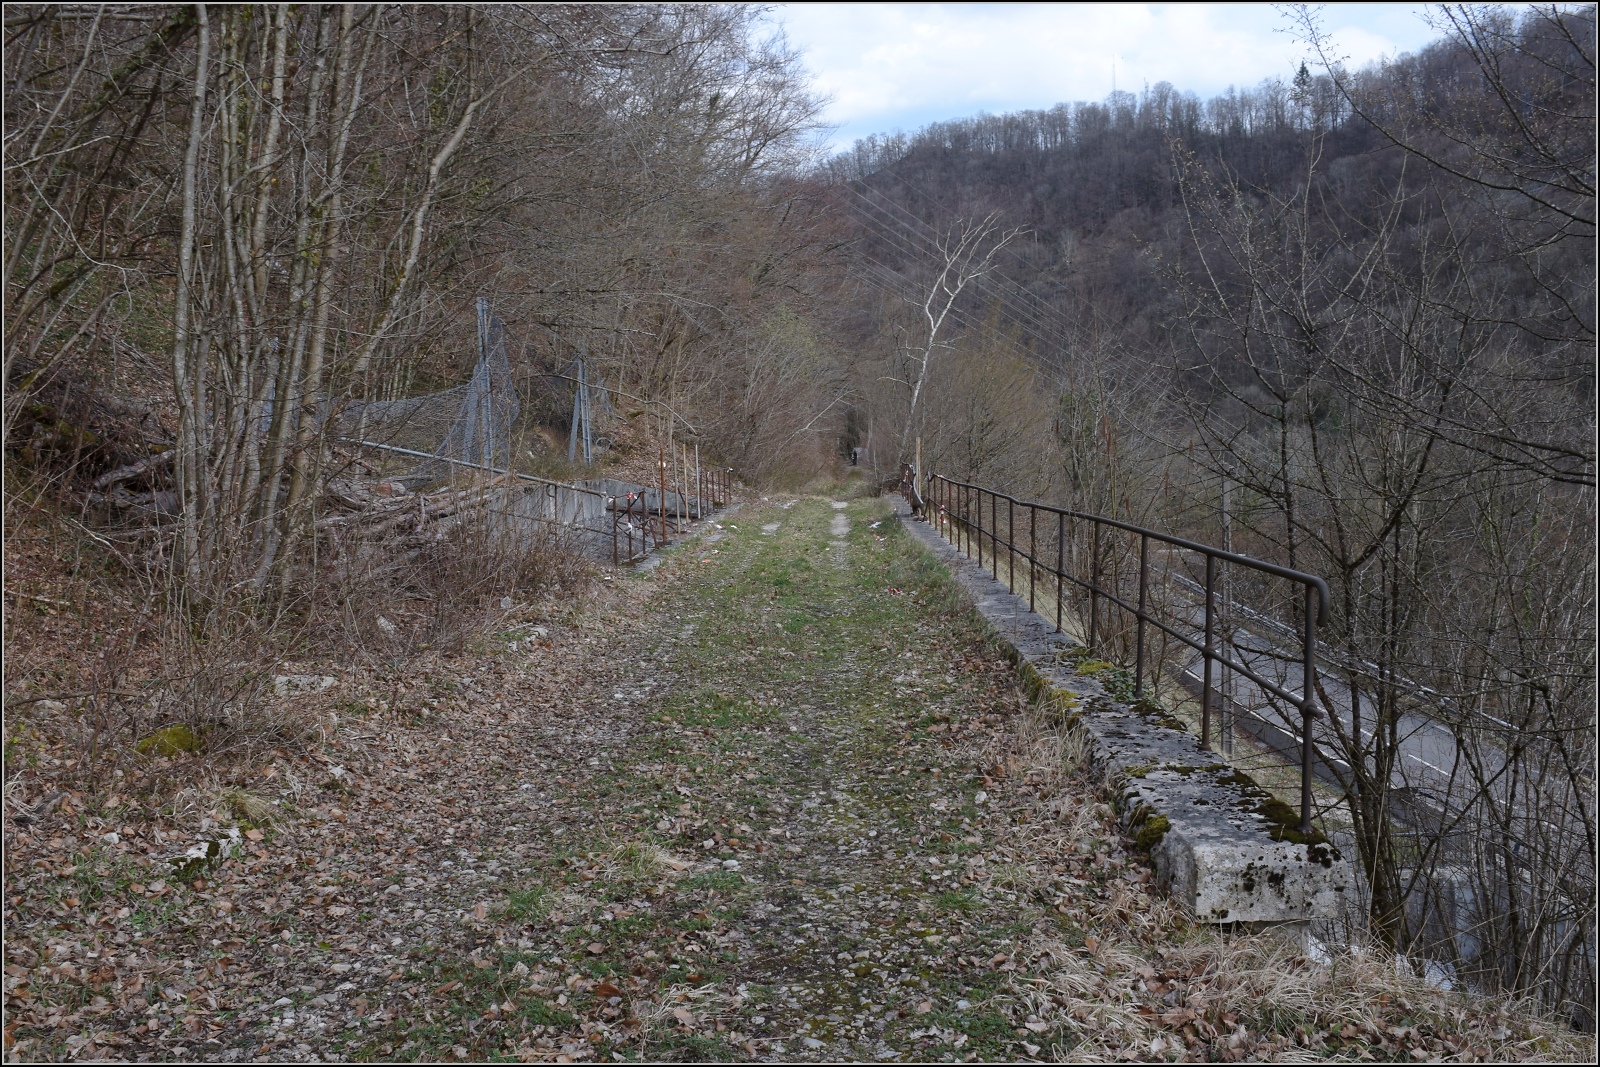 Bahn entlang des Doubs.

Der Stichstrecke nach St-Hippolyte wurden hinter Point-de-Roide schon längst die Gleise geraubt. Ein lauschiger Waldweg ist der Rest von Strecke 859000. Doch bei genauerer Betrachtung erkennt man hier einen Viadukt. März 2023.